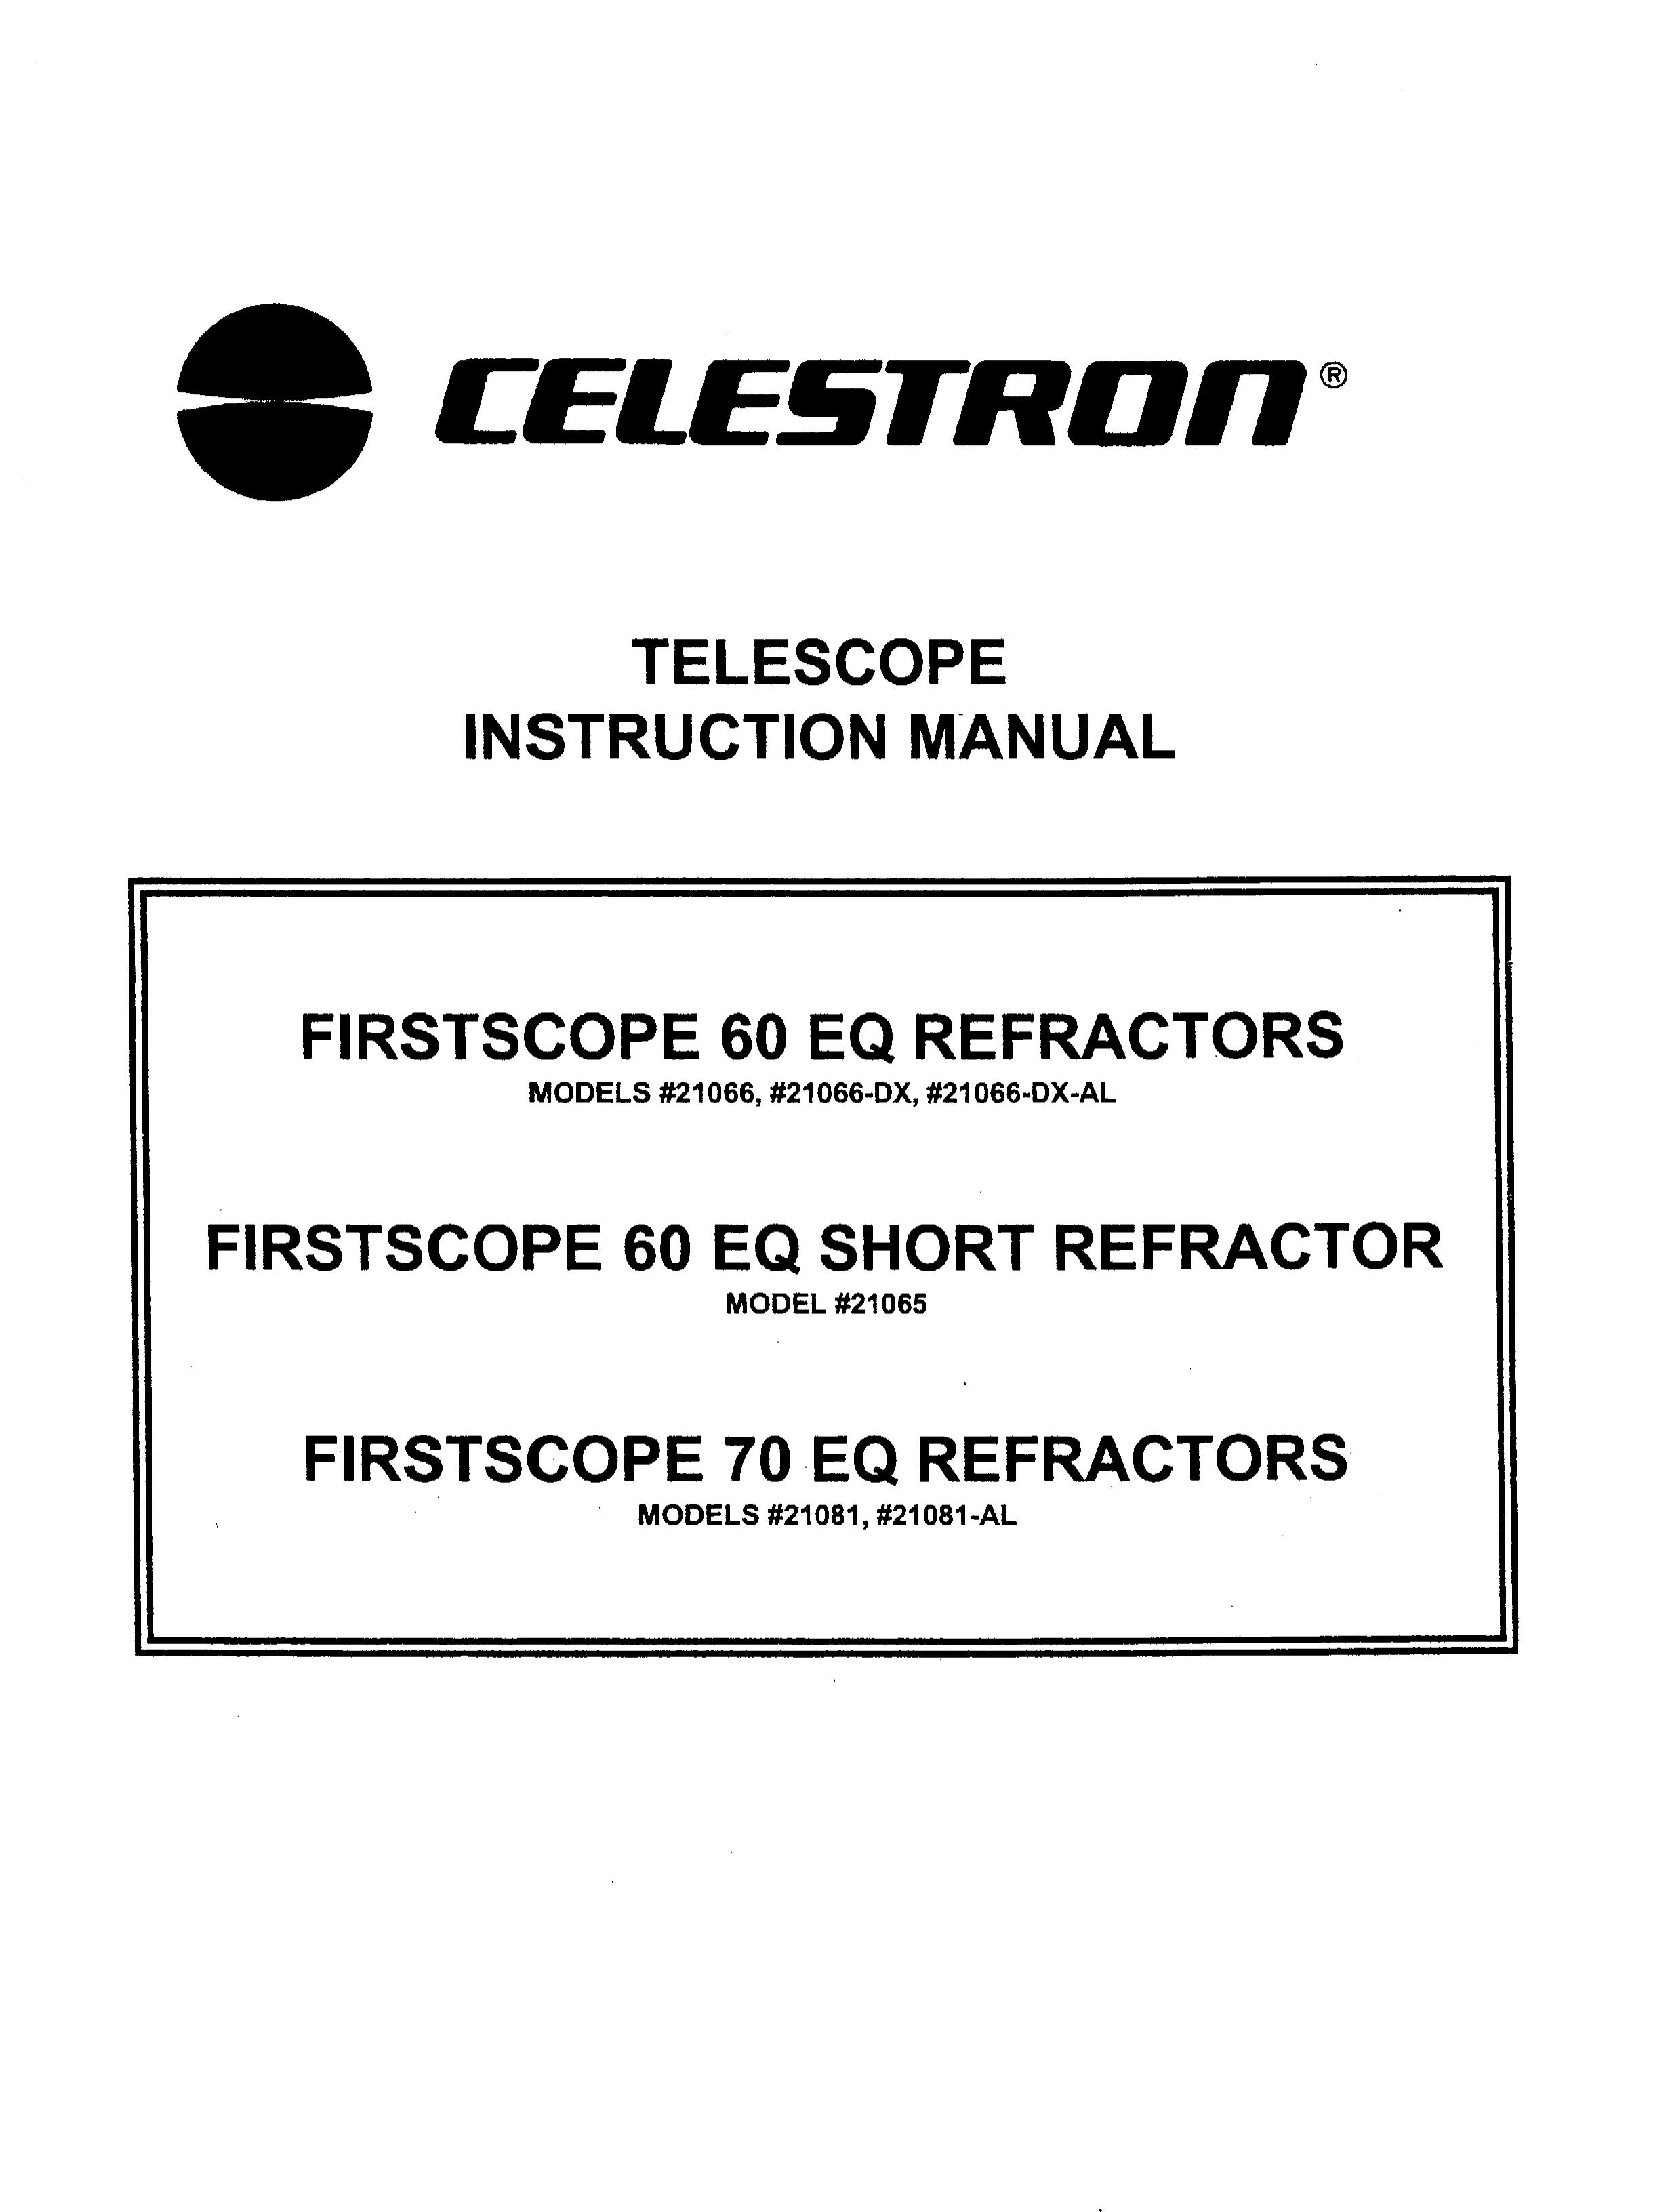 Celestron 21066-DX-AL Telescope User Manual